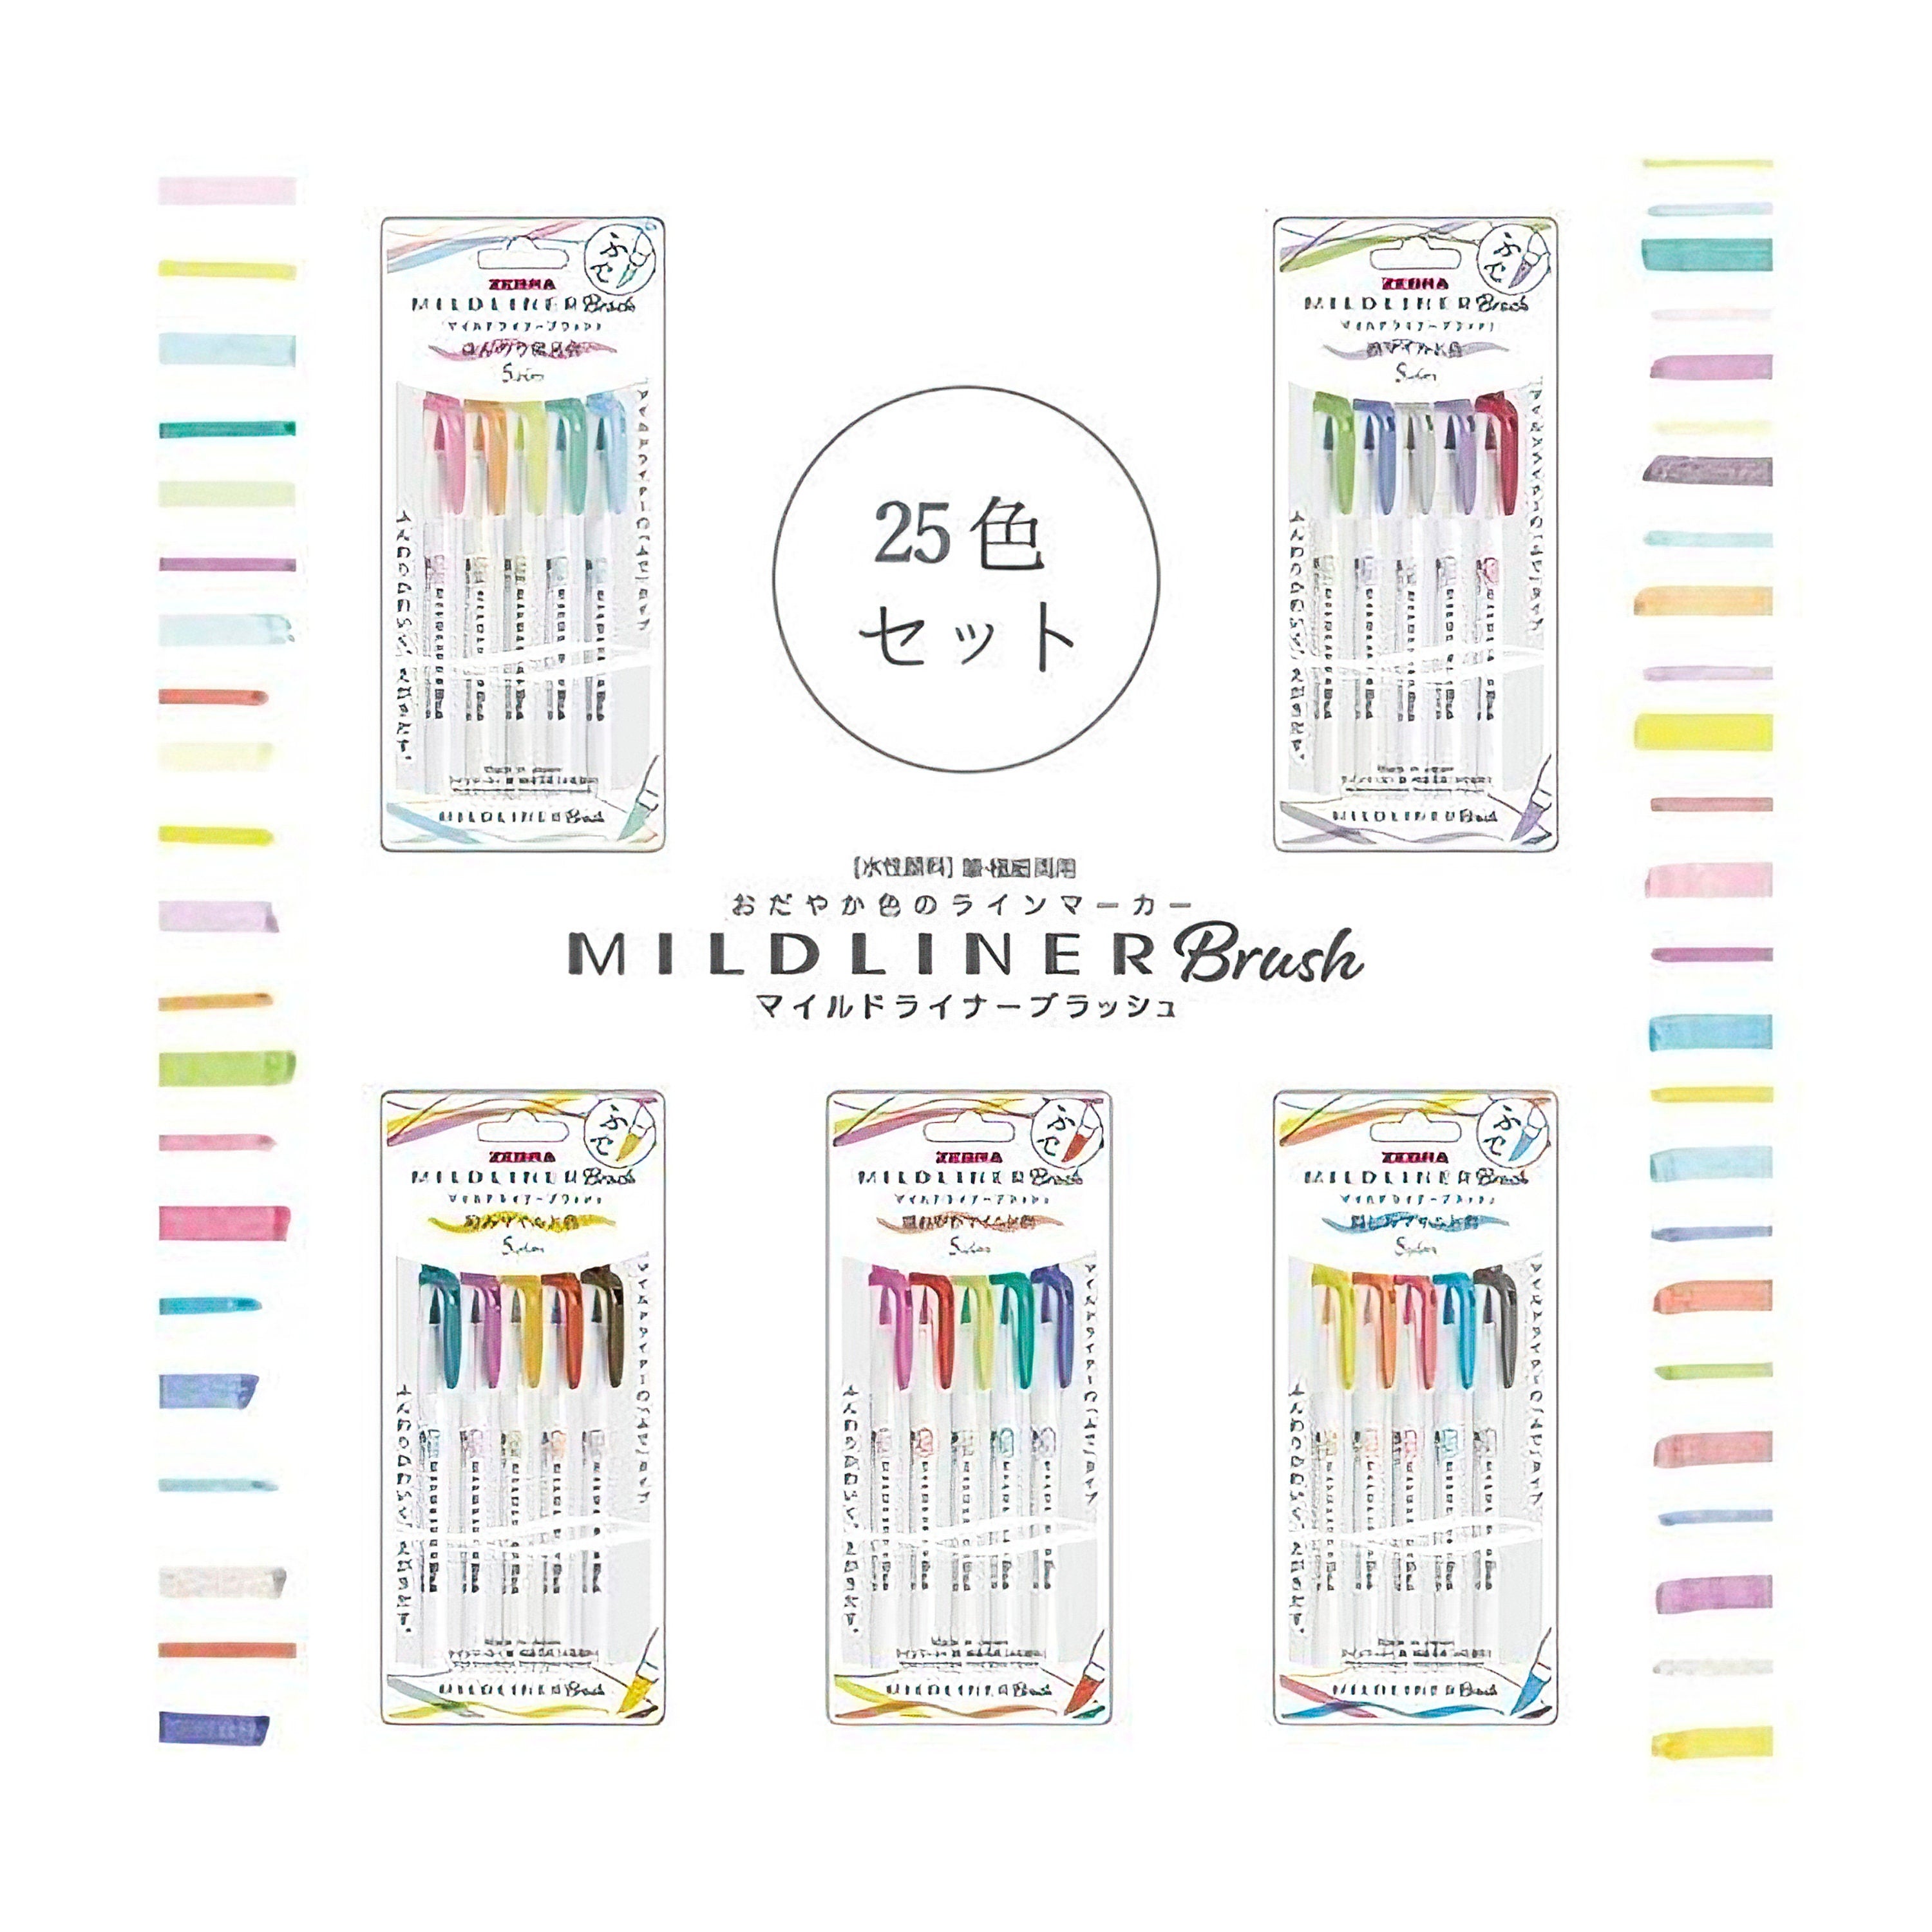 Zebra Mildliner Brush 5 Color Set, Slightly Fluorescent Color WFT8-5C